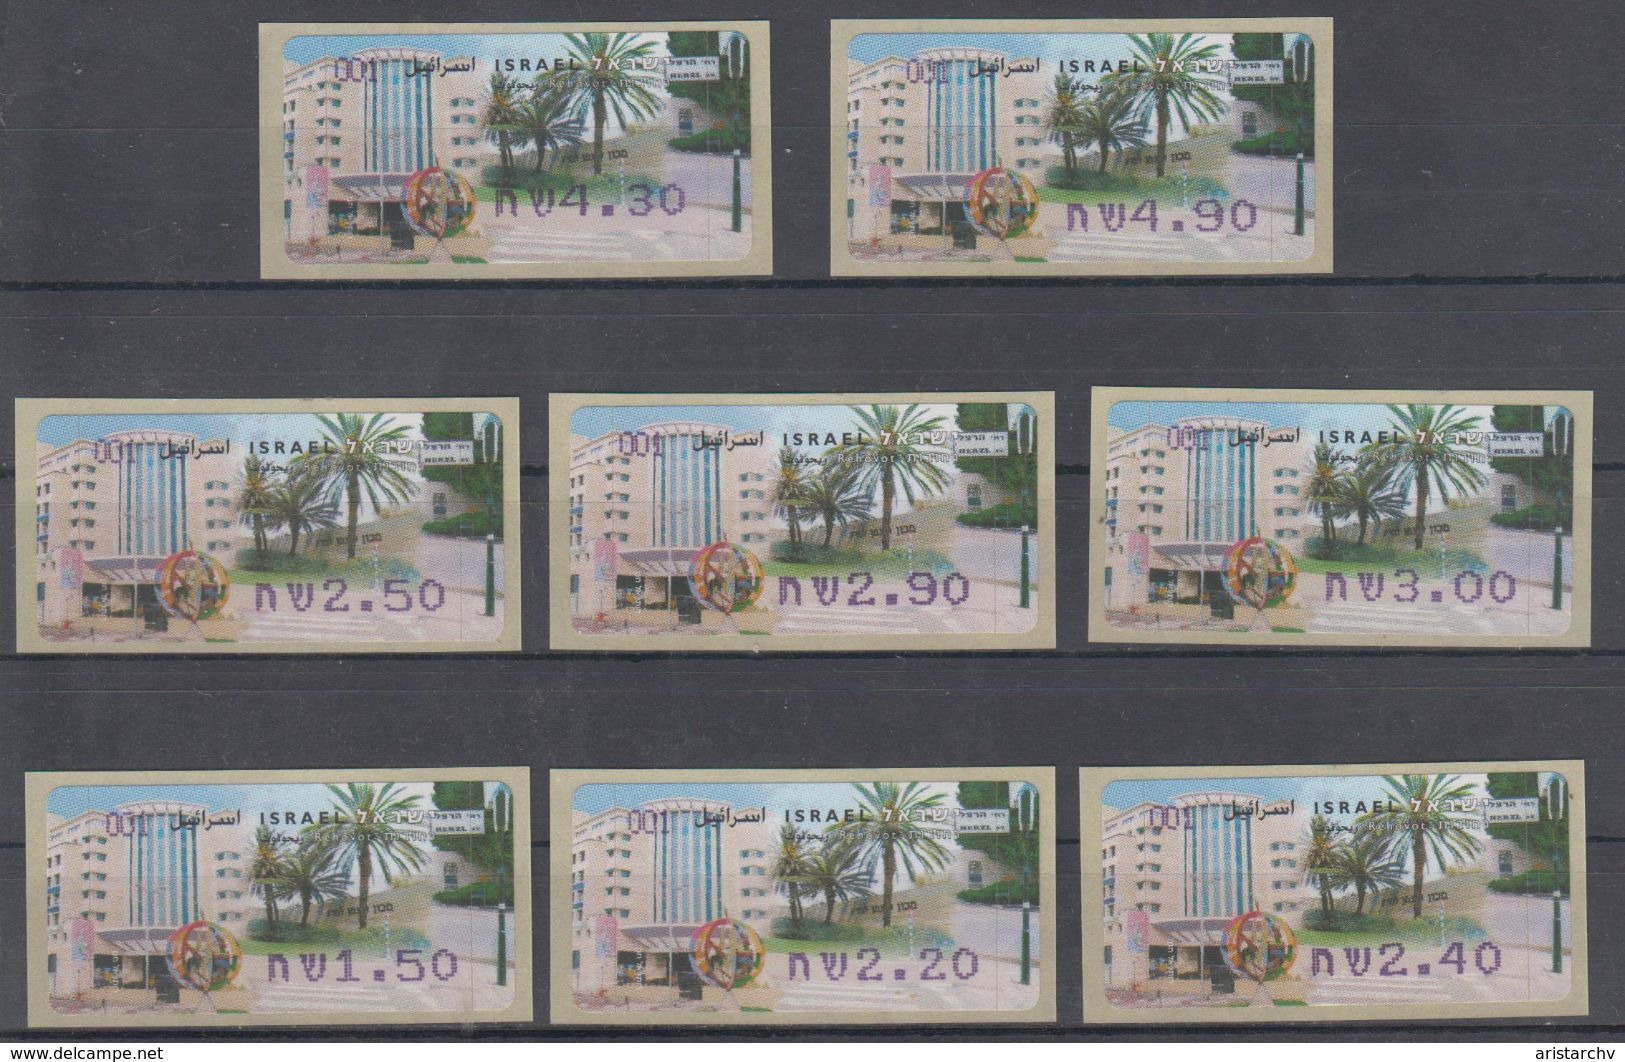 ISRAEL 2006 ATM KLUSSENDORF REHOVOT FULL SET OF 8 STAMPS - Vignettes D'affranchissement (Frama)